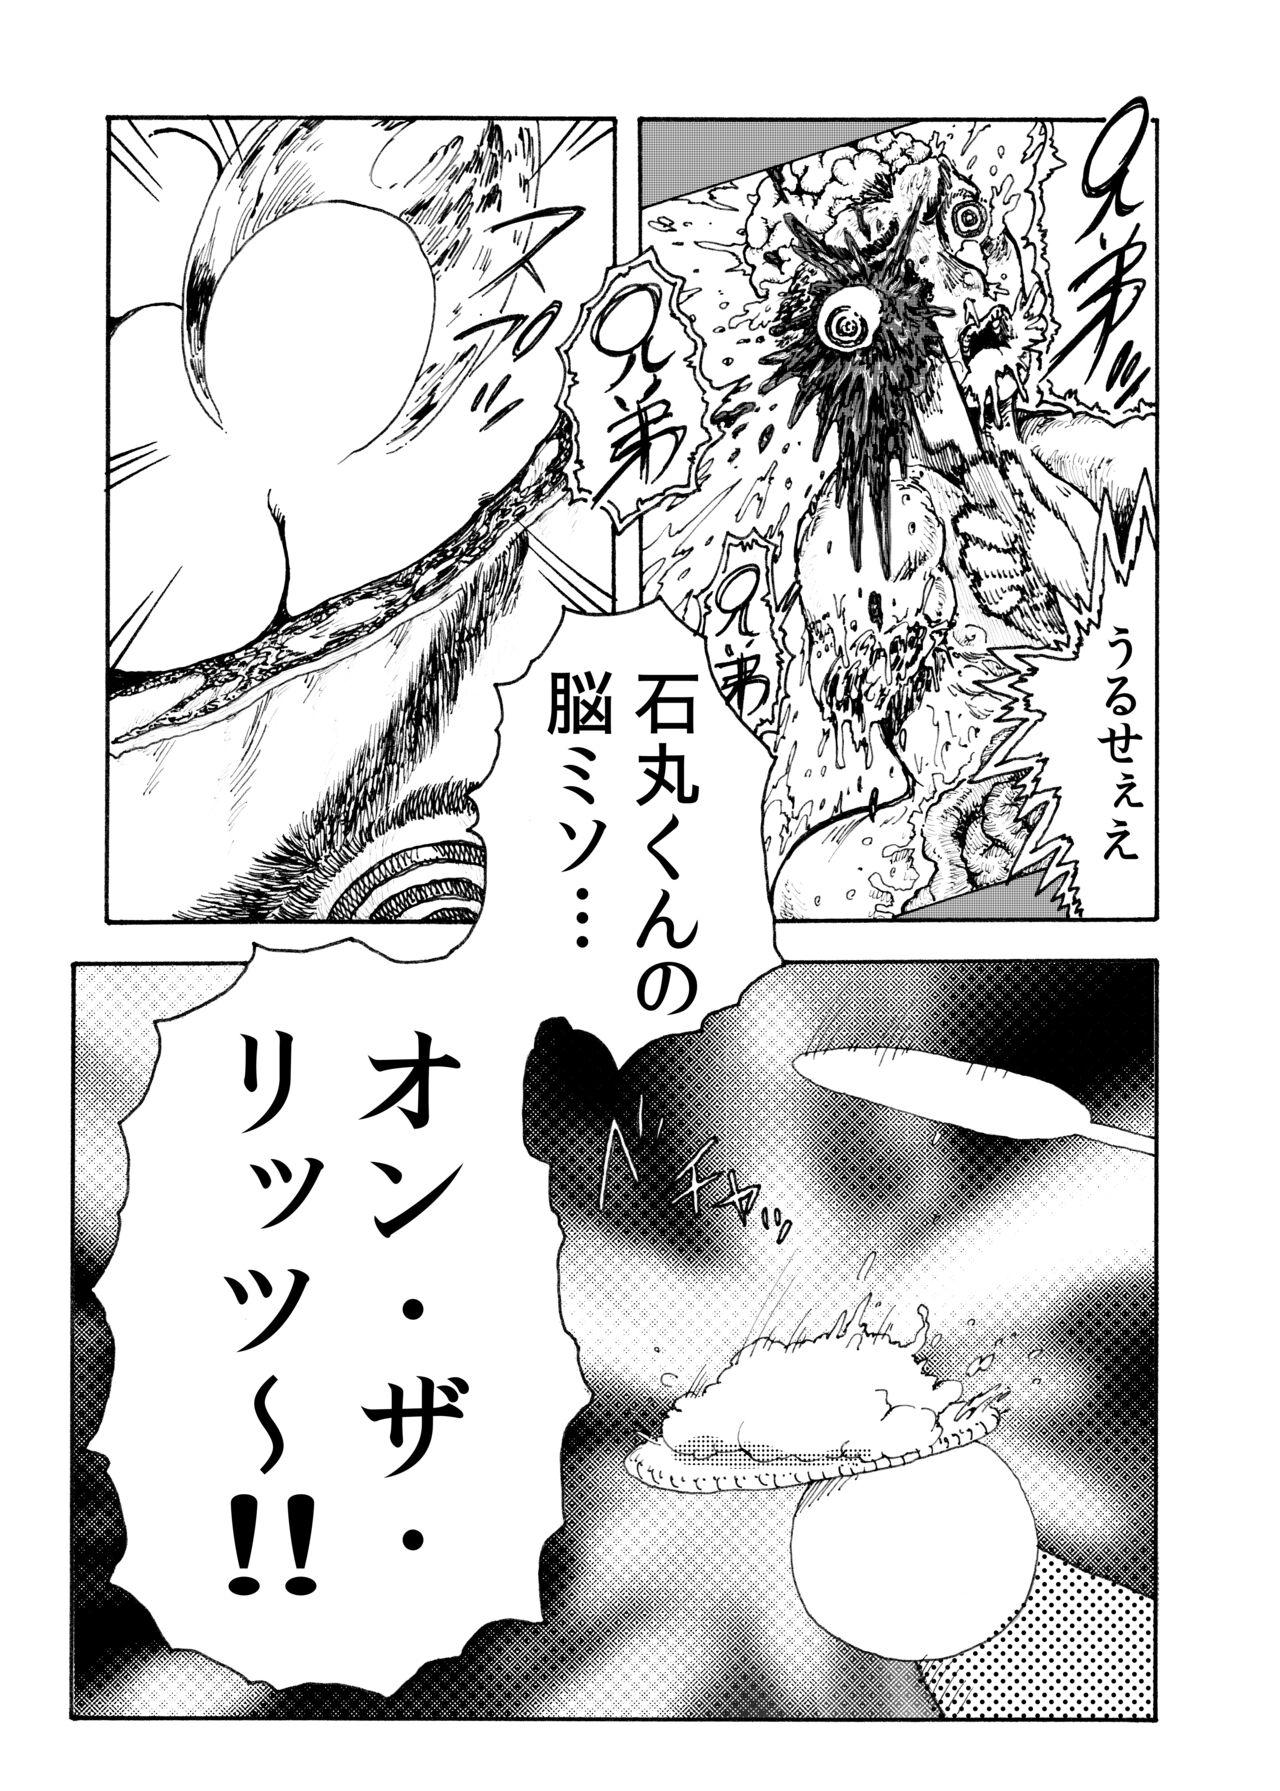 Tranny [Koshigerunasunibusu] WEB Sairoku [R18G] '> shut down/a' - Danganronpa Compilation - Page 10